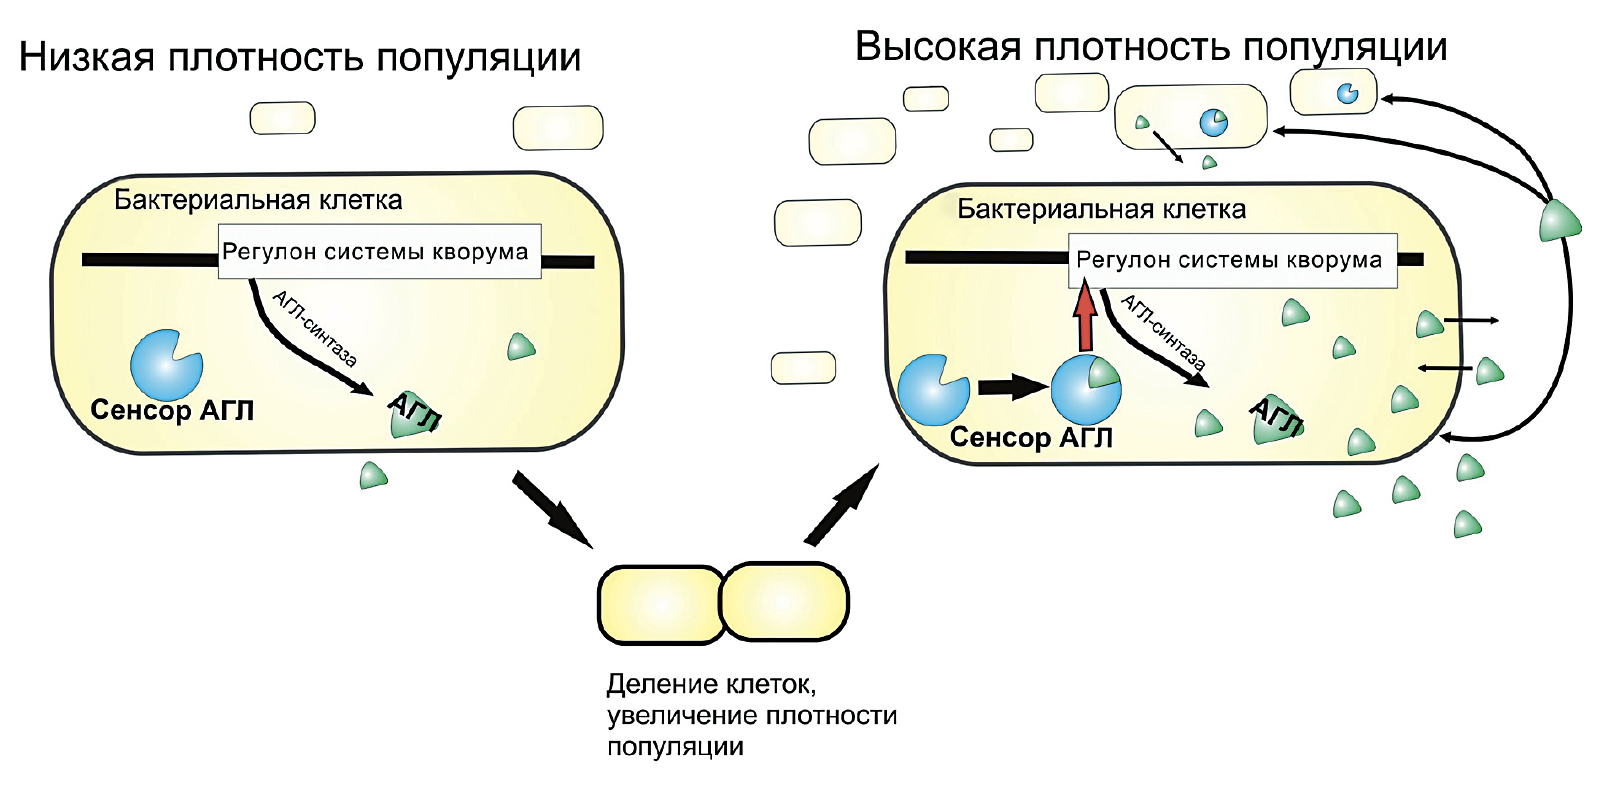 Схема регуляторной системы чувства кворума бактерий